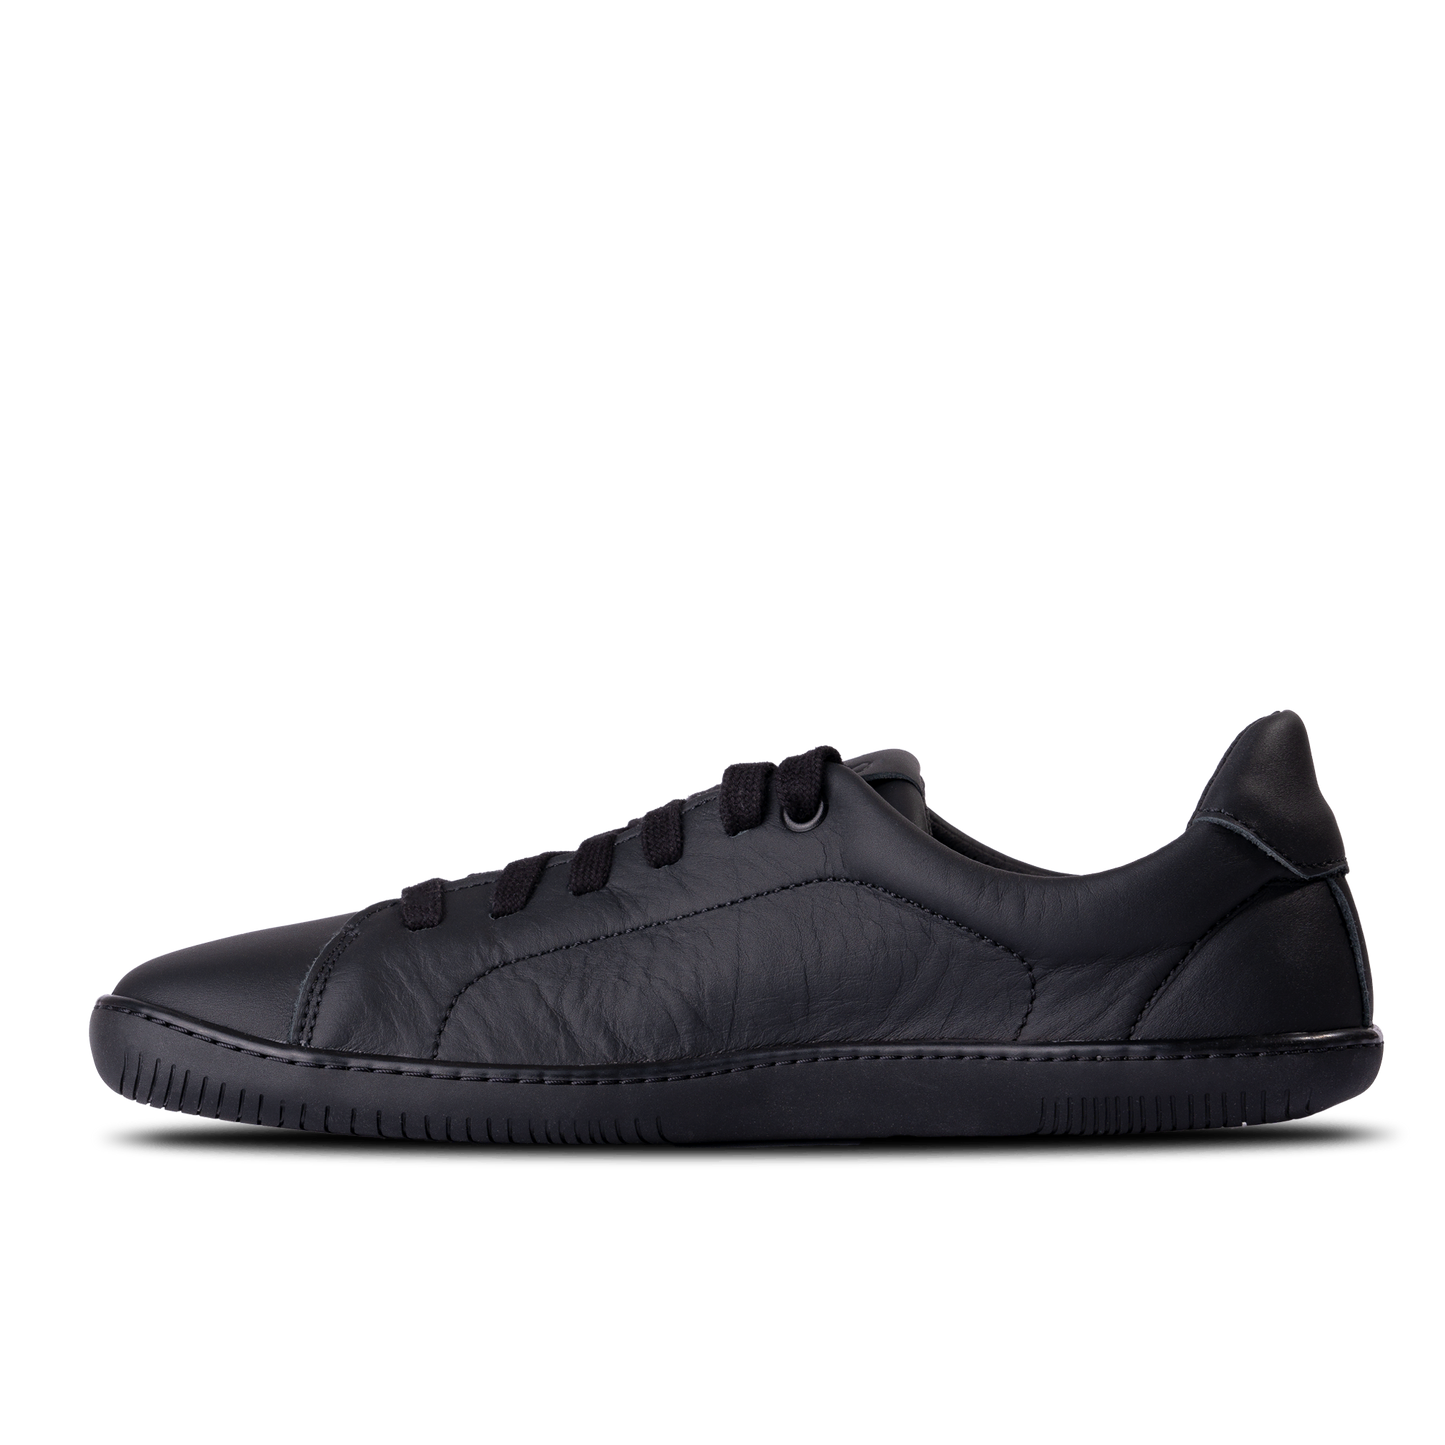 Aylla Keck Womens barfods sneakers i læder til kvinder i farven black / black, inderside